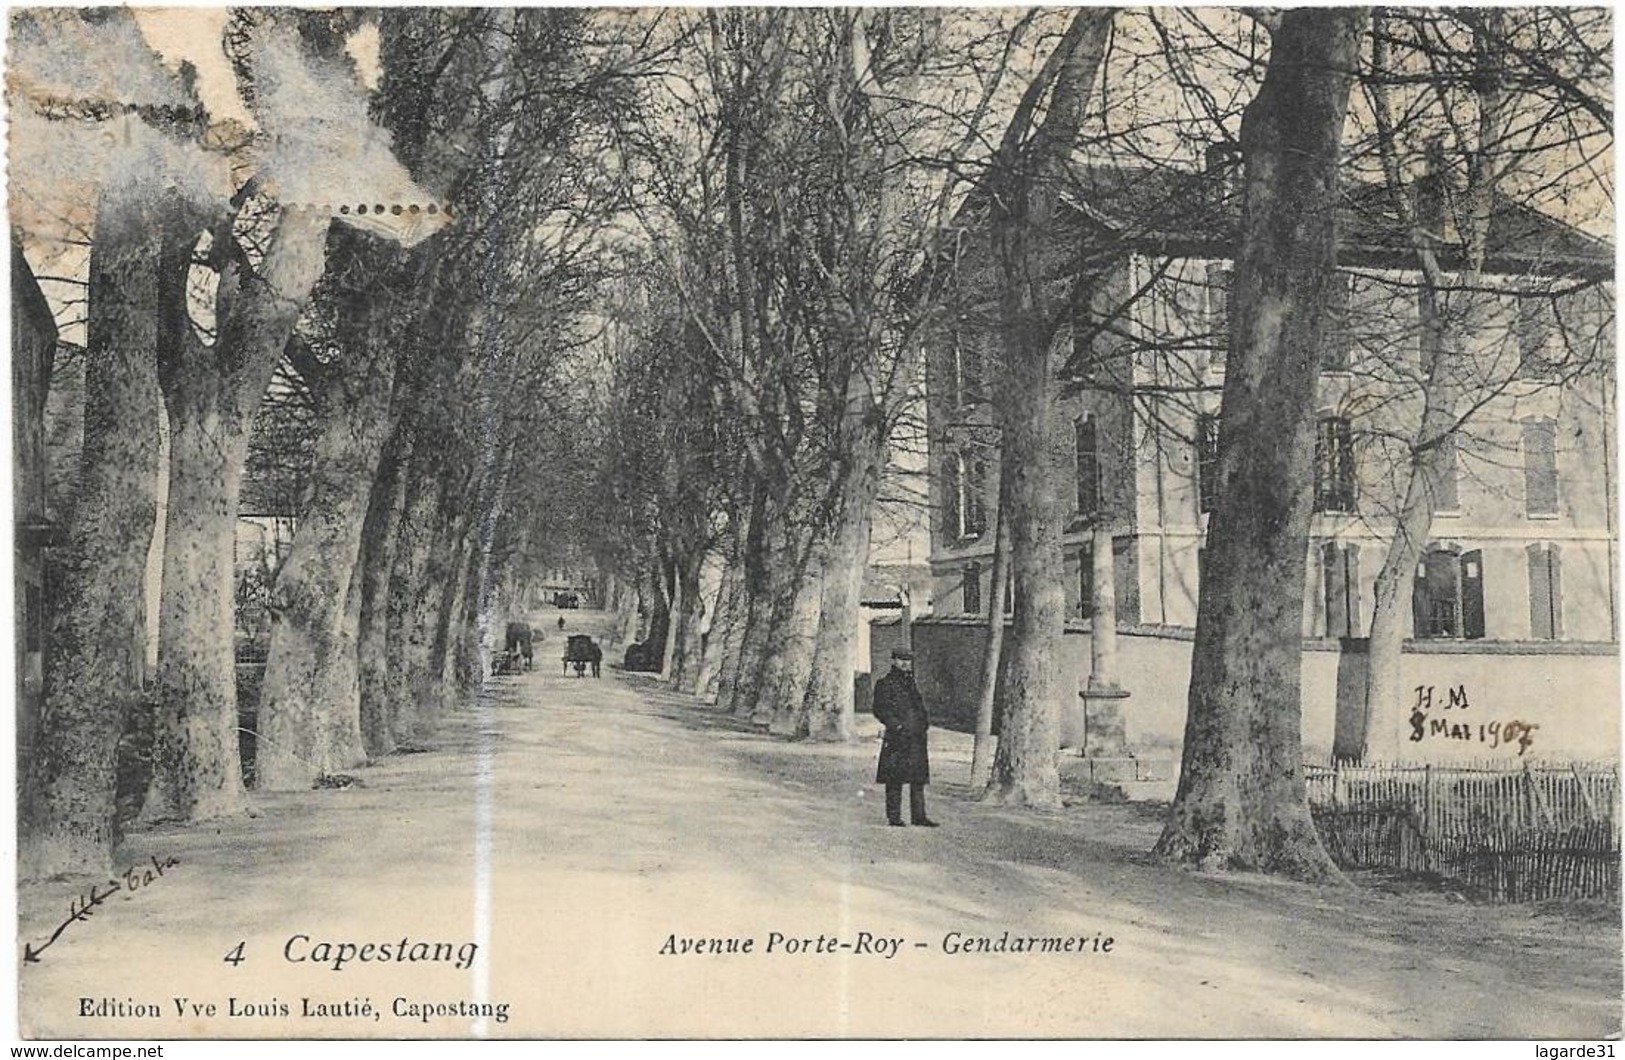 Capestang Gendarmerie Avenue Porte-roy - Capestang